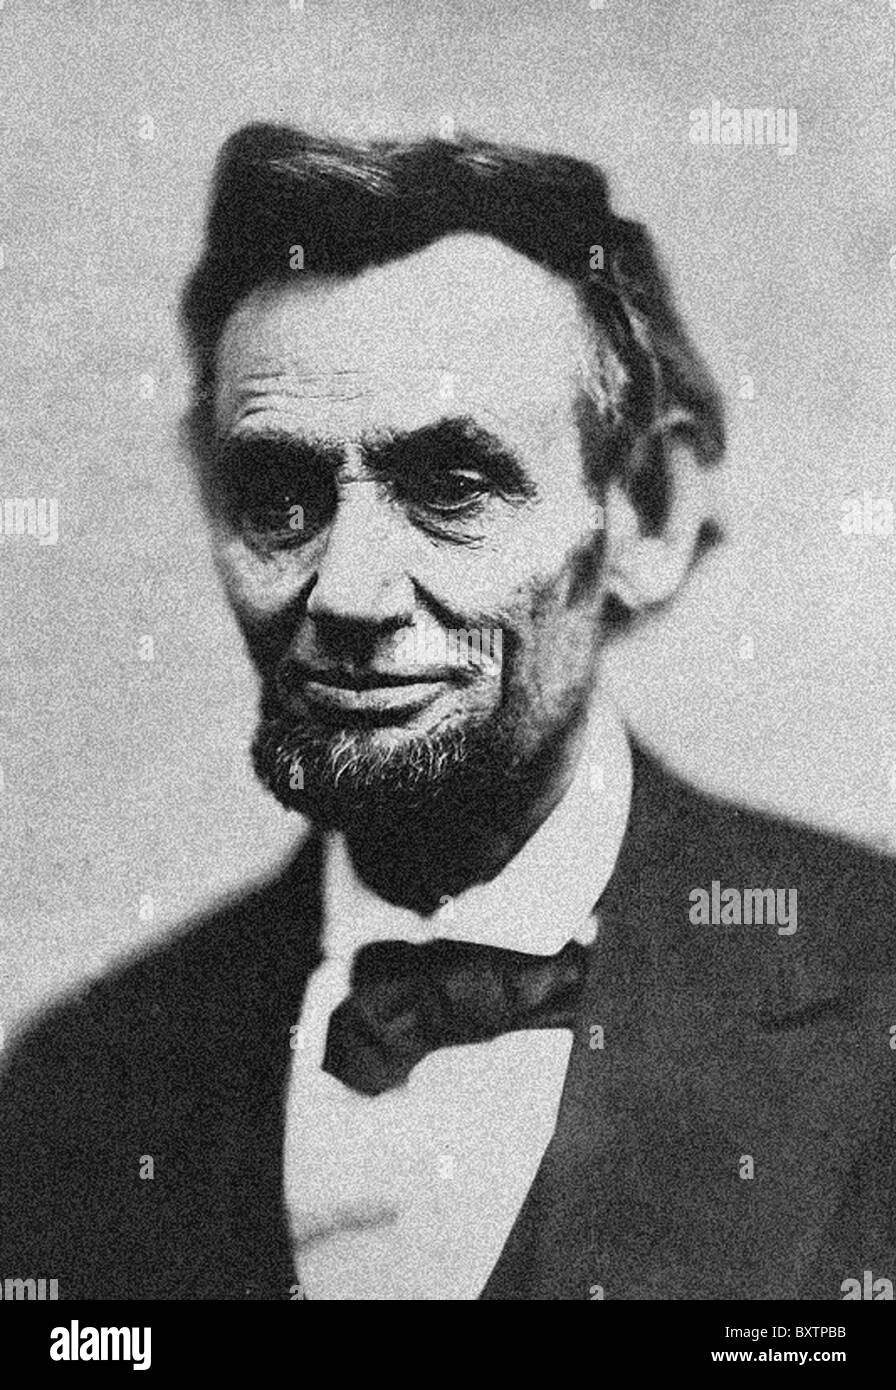 Abraham Lincoln (12 février 1809 - 15 avril 1865) a été le 16e président des États-Unis. Banque D'Images